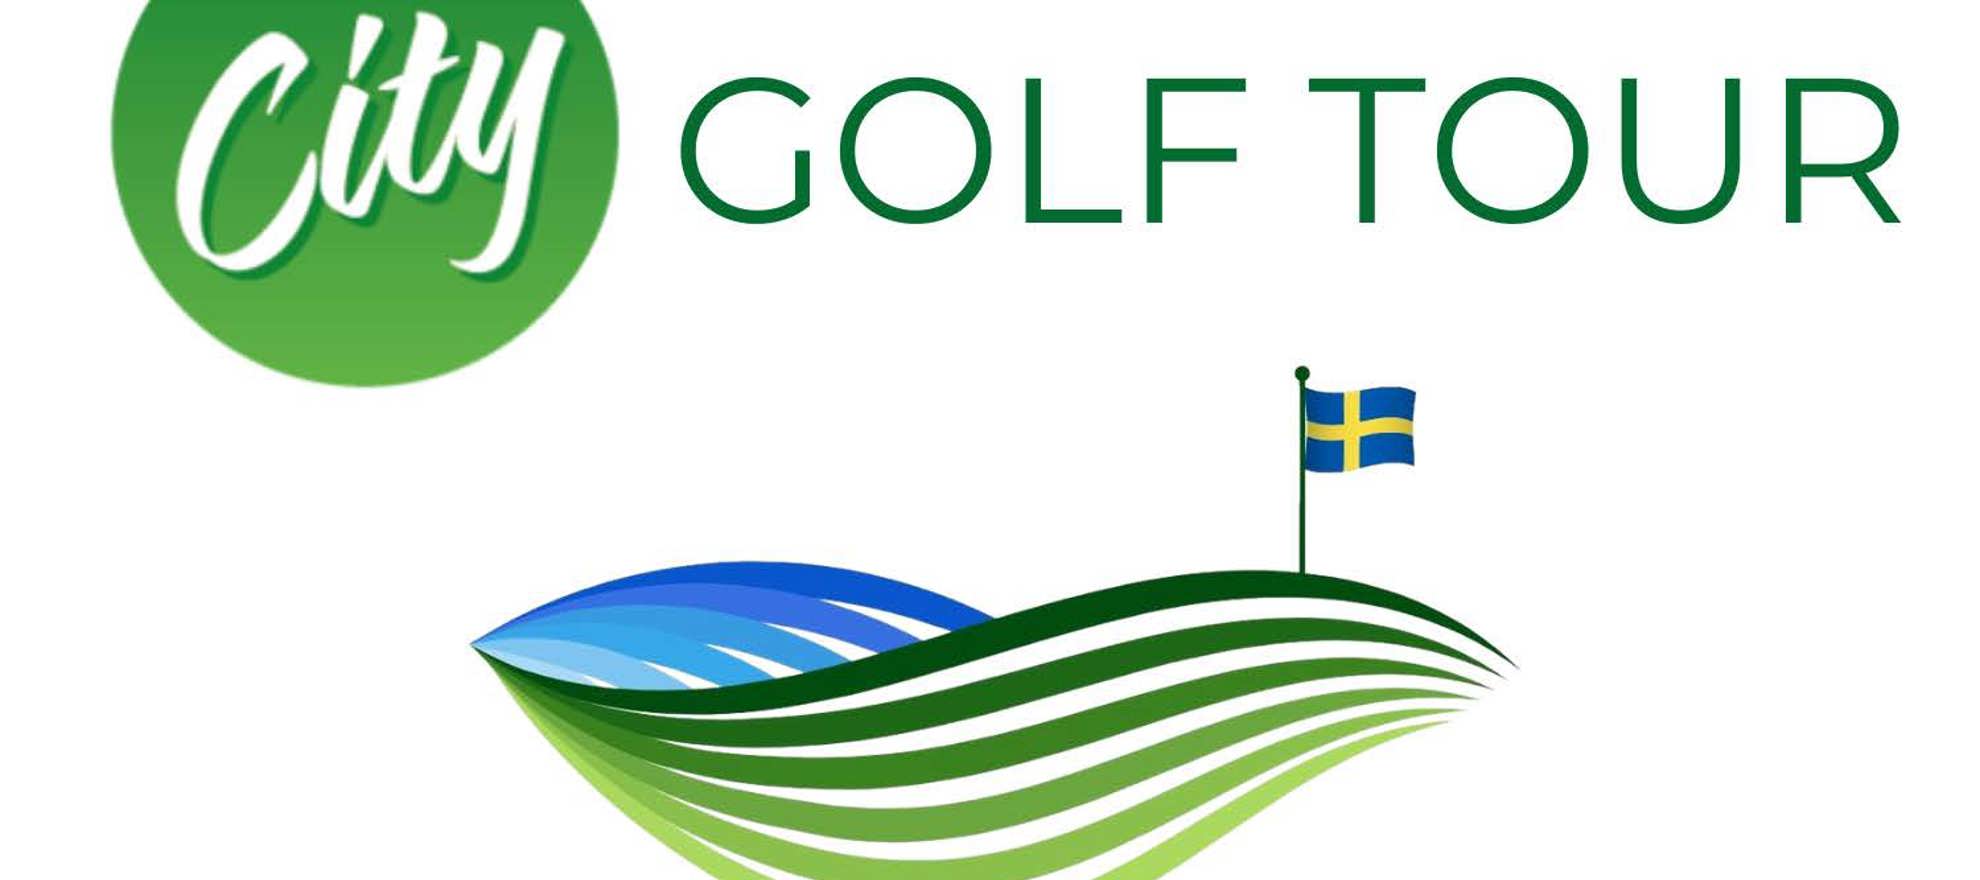 Die schwedische MOS Alliance präsentiert City Golf als Titelsponsor einer neuen nationalen Bahnengolf-Tour.